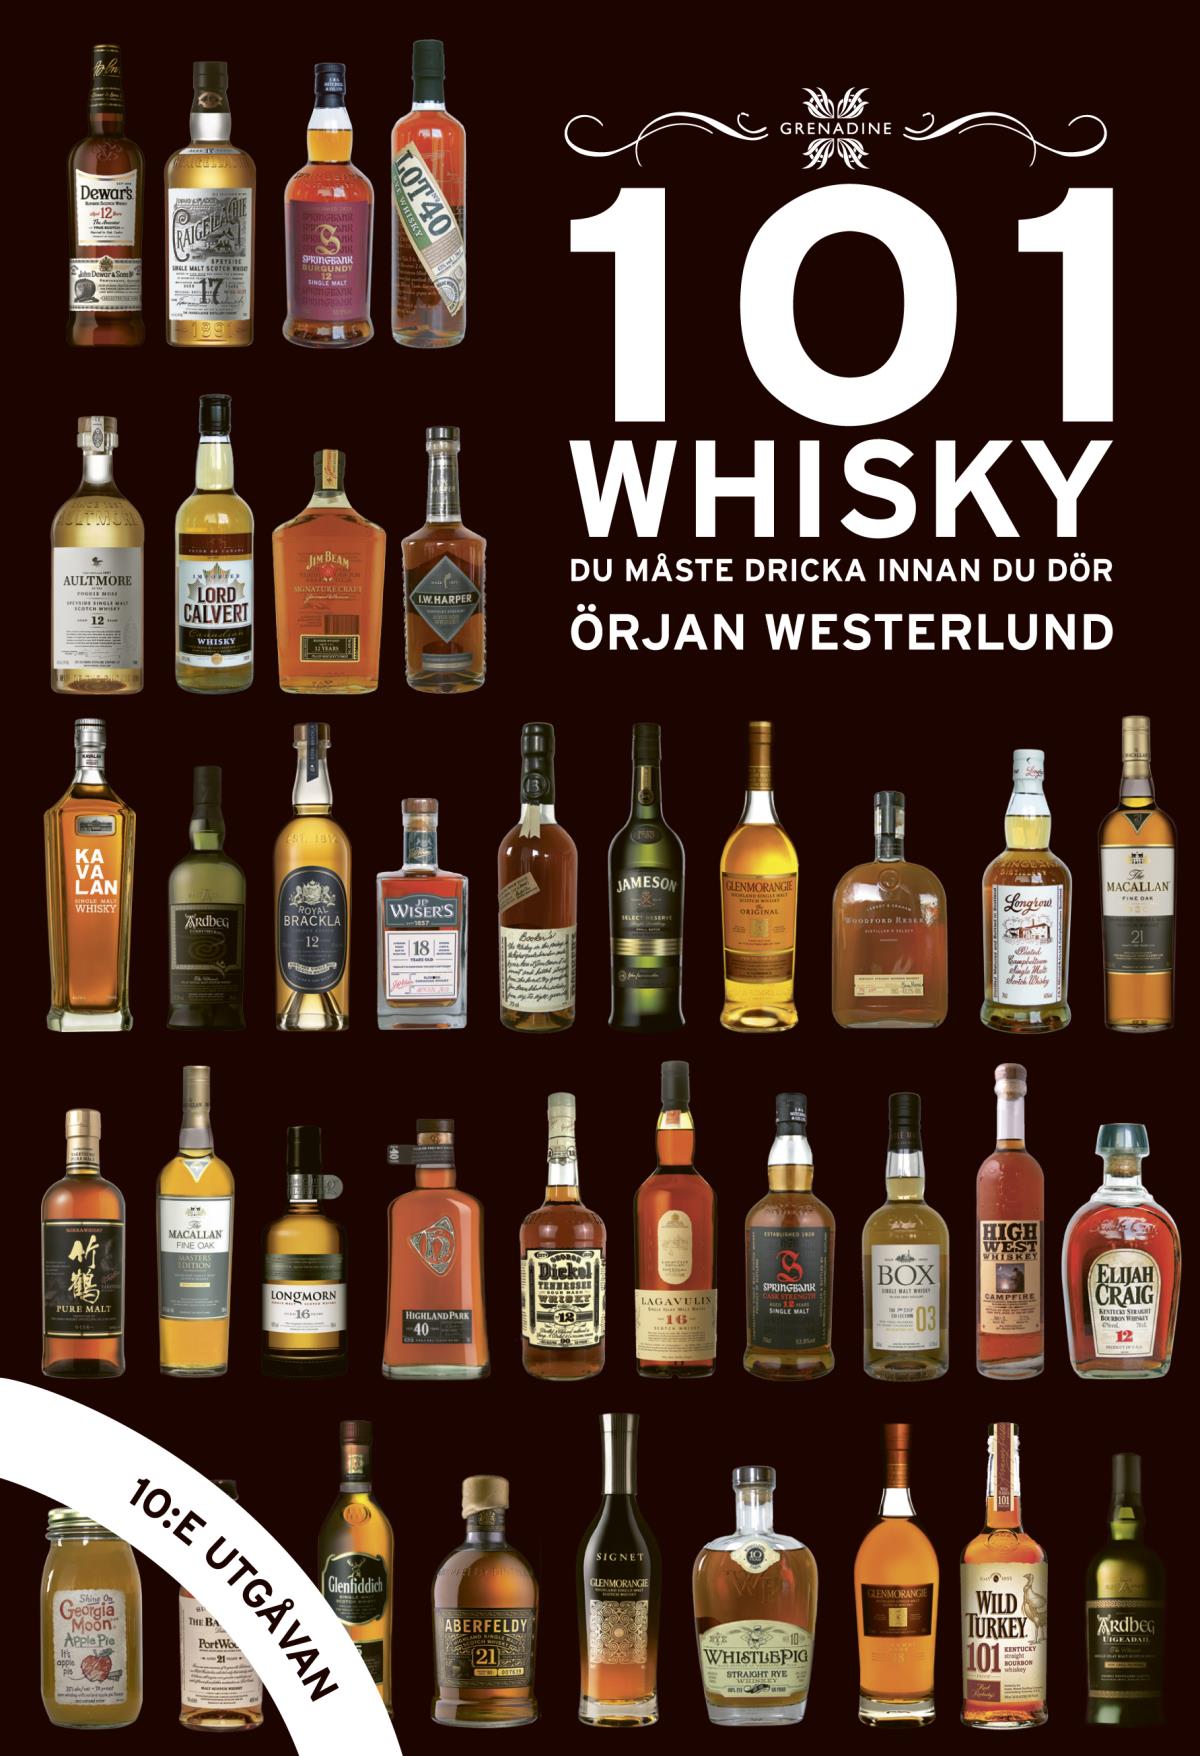 101 Whisky Du Måste Dricka Innan Du Dör